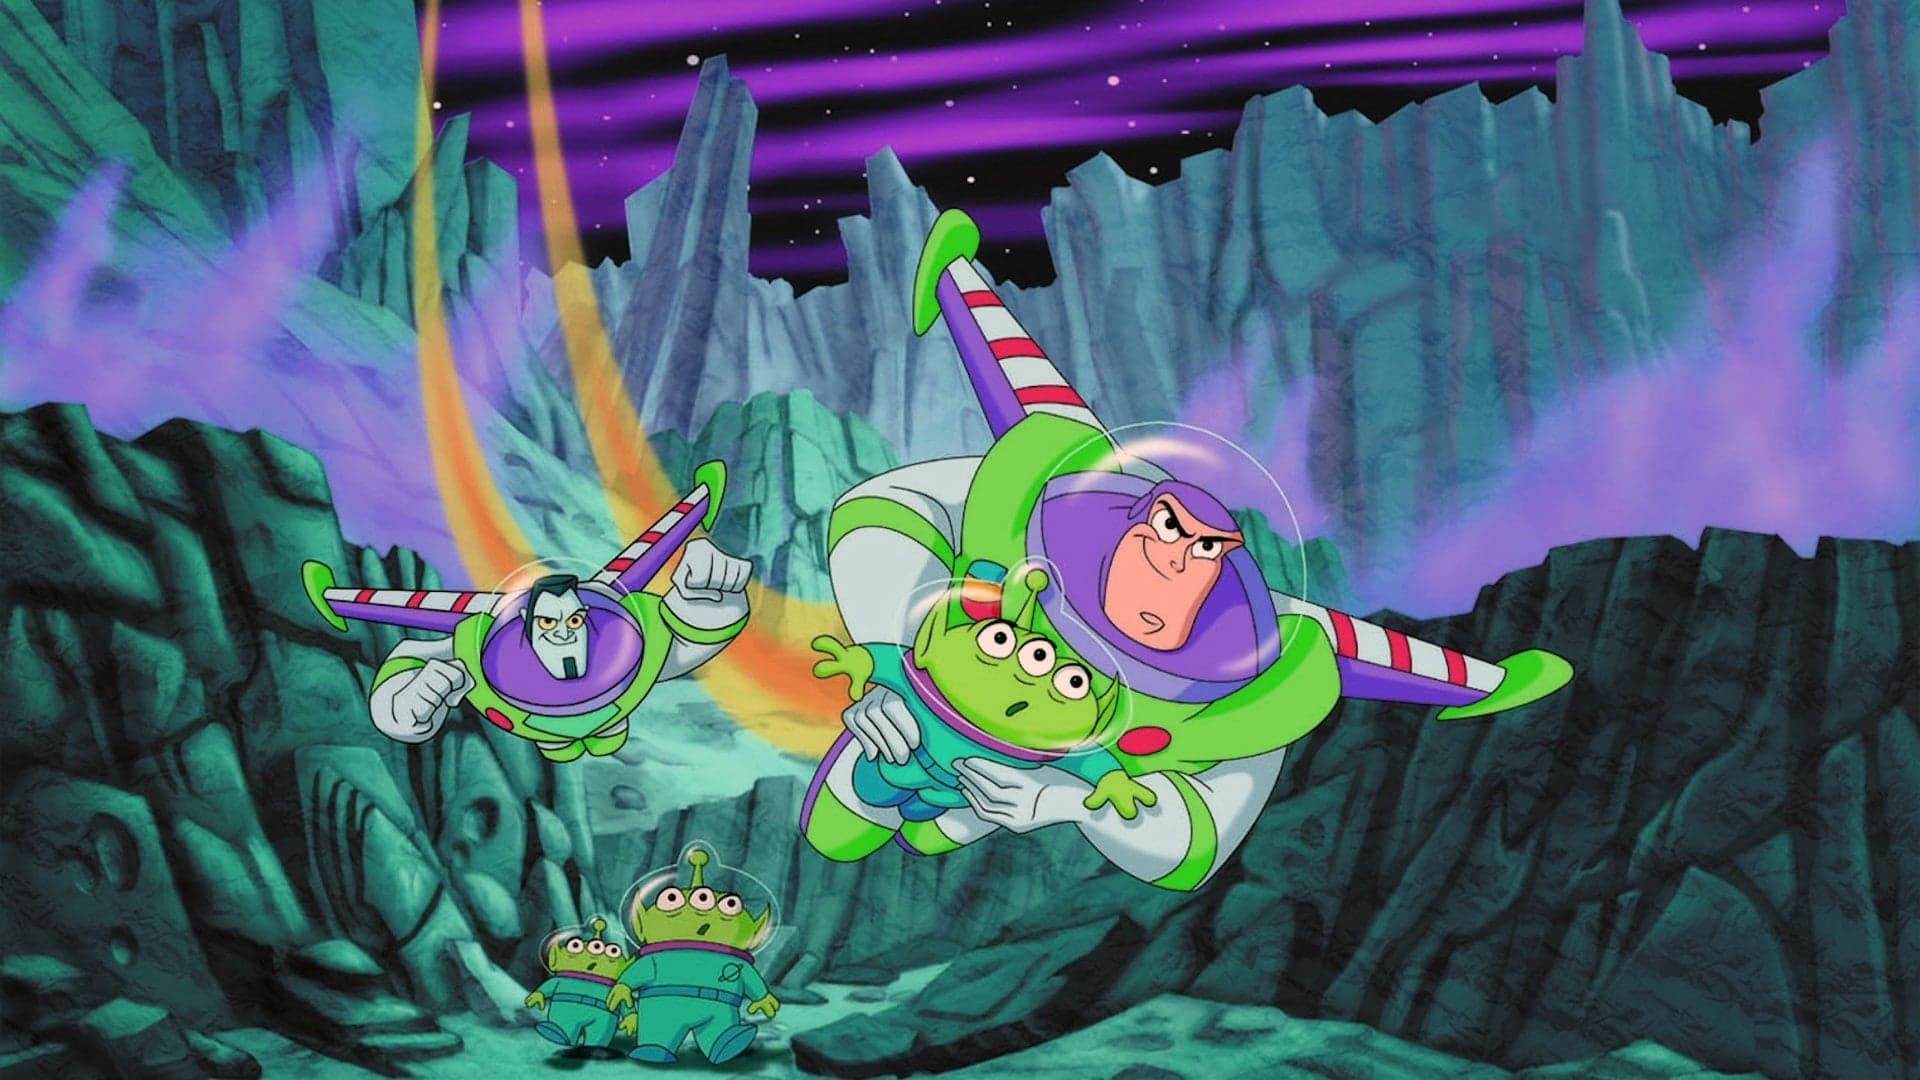 Buzz Lightyear da comando stellare - Si parte!